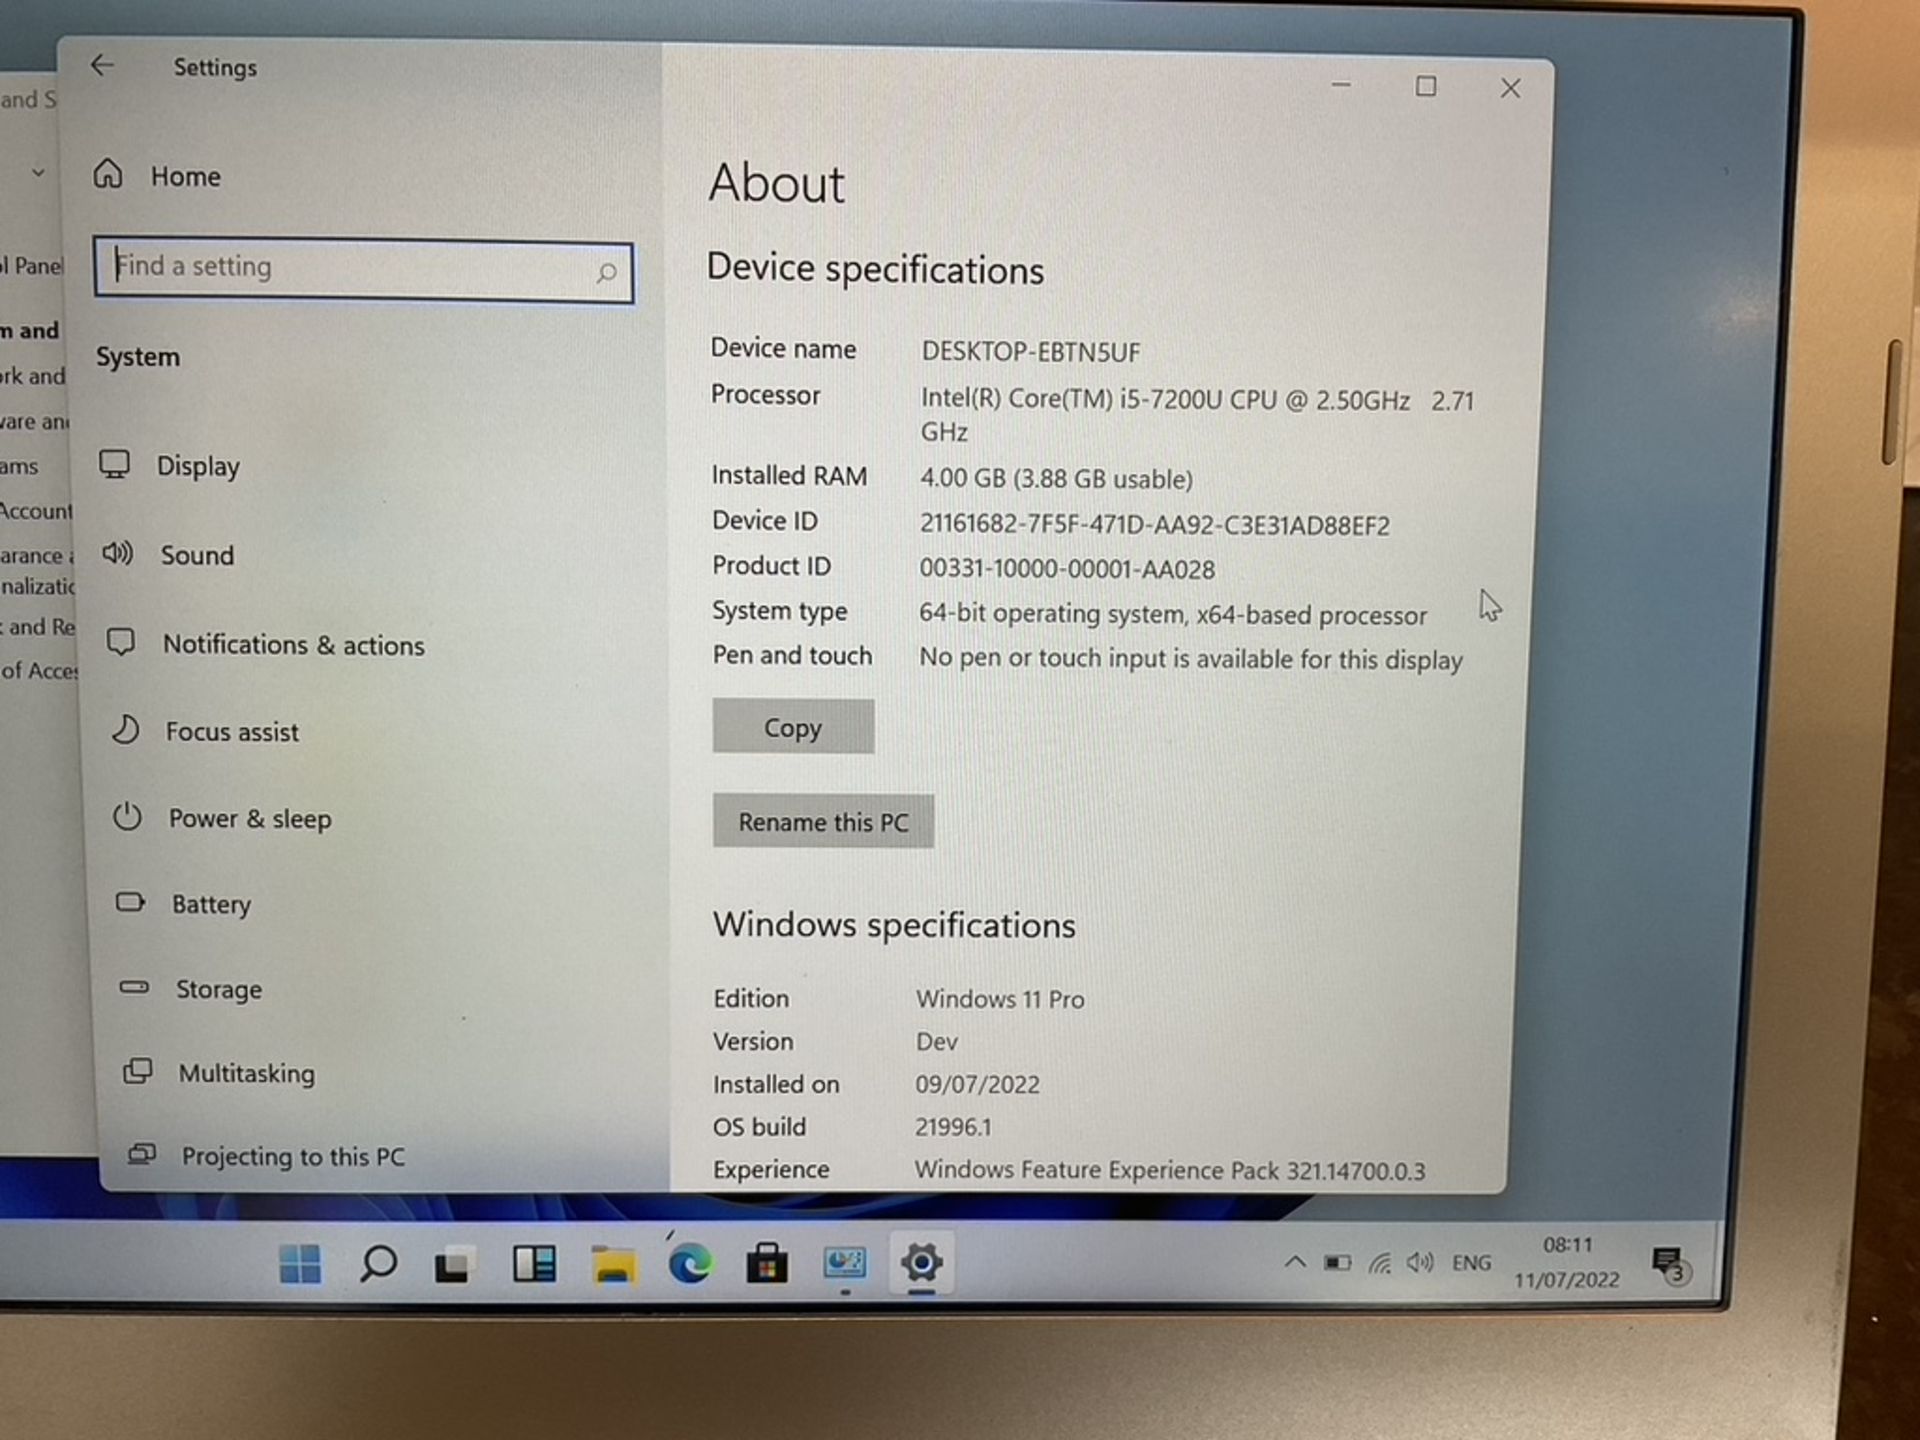 CLEVO N131WU Windows 11 Laptop 13"" Intel Core i5-7200U 4GB DDR4 120GB SSD WiFi Webcam HDMI Office - Image 3 of 9